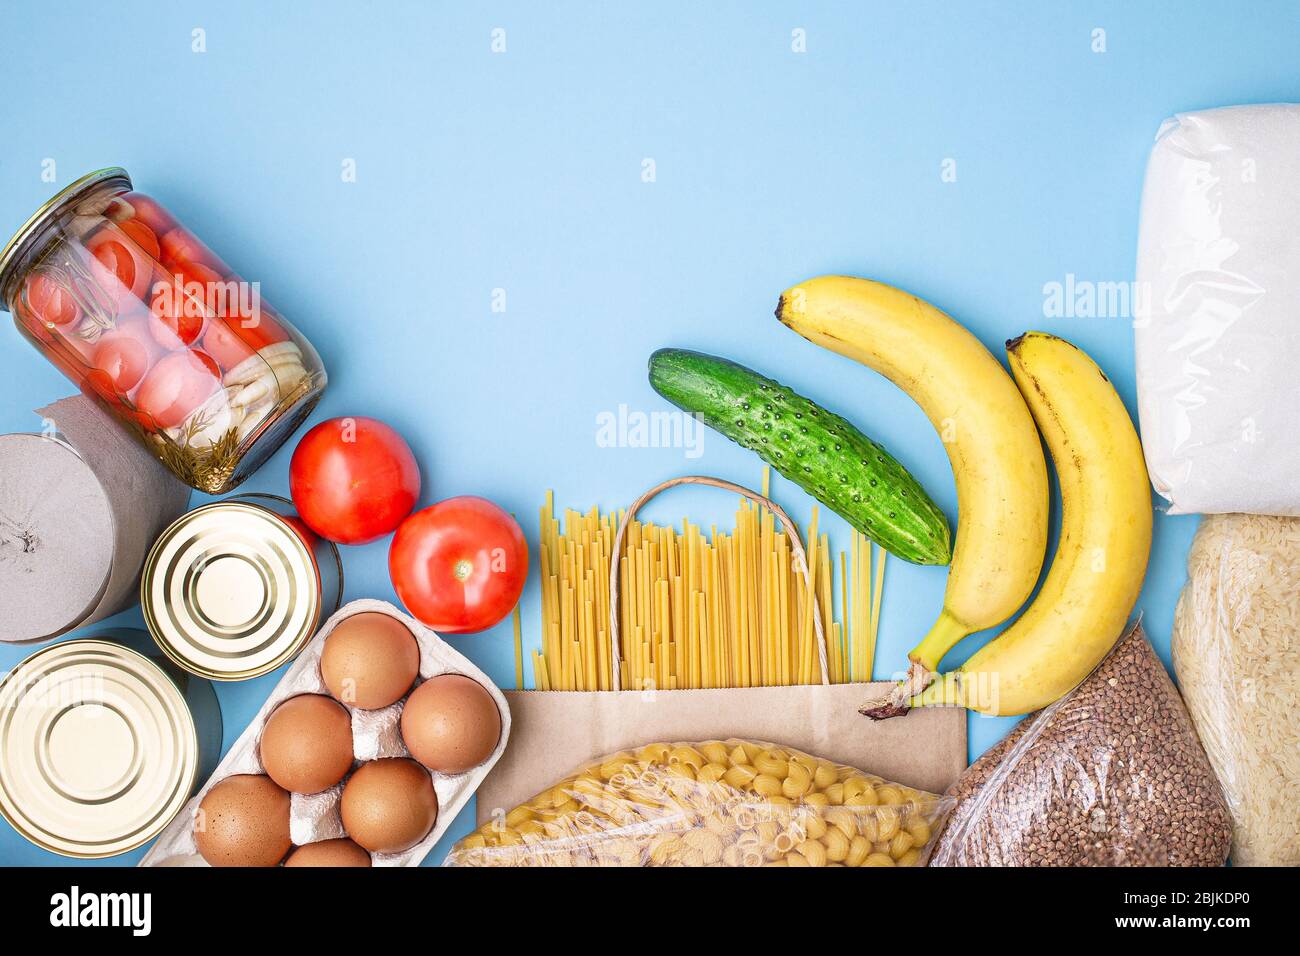 Lieferkost. Reis, Buchweizen, Nudeln, Dosenfutter, Zucker, Tomaten, Gurken, Bananen auf blauem Hintergrund. Sammeln Sie freiwillig Lebensmittel. Spende, coron Stockfoto